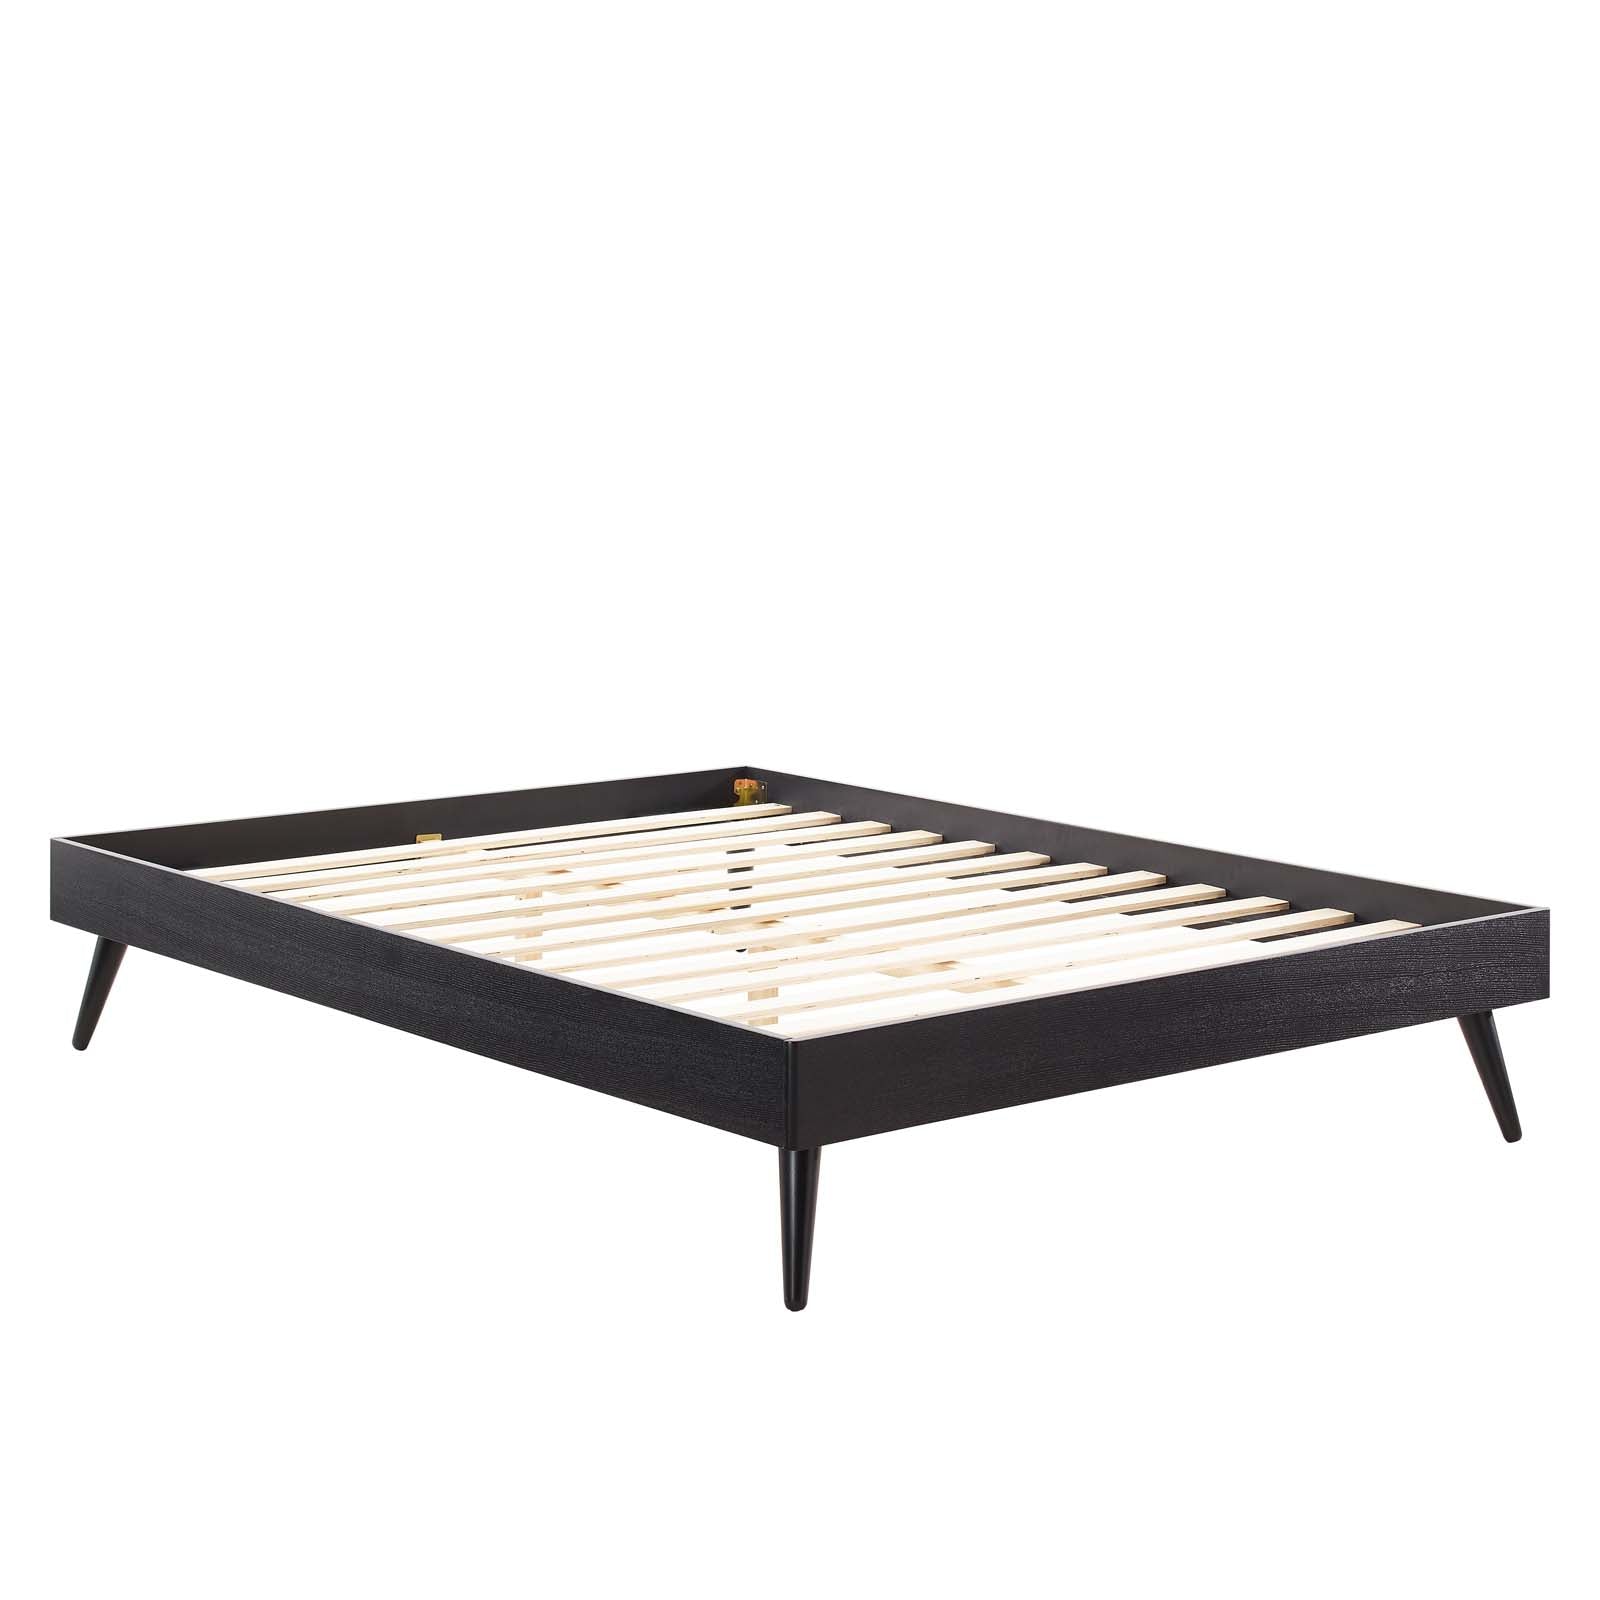 Modway Beds - Margo Full Wood Platform Bed Frame Black